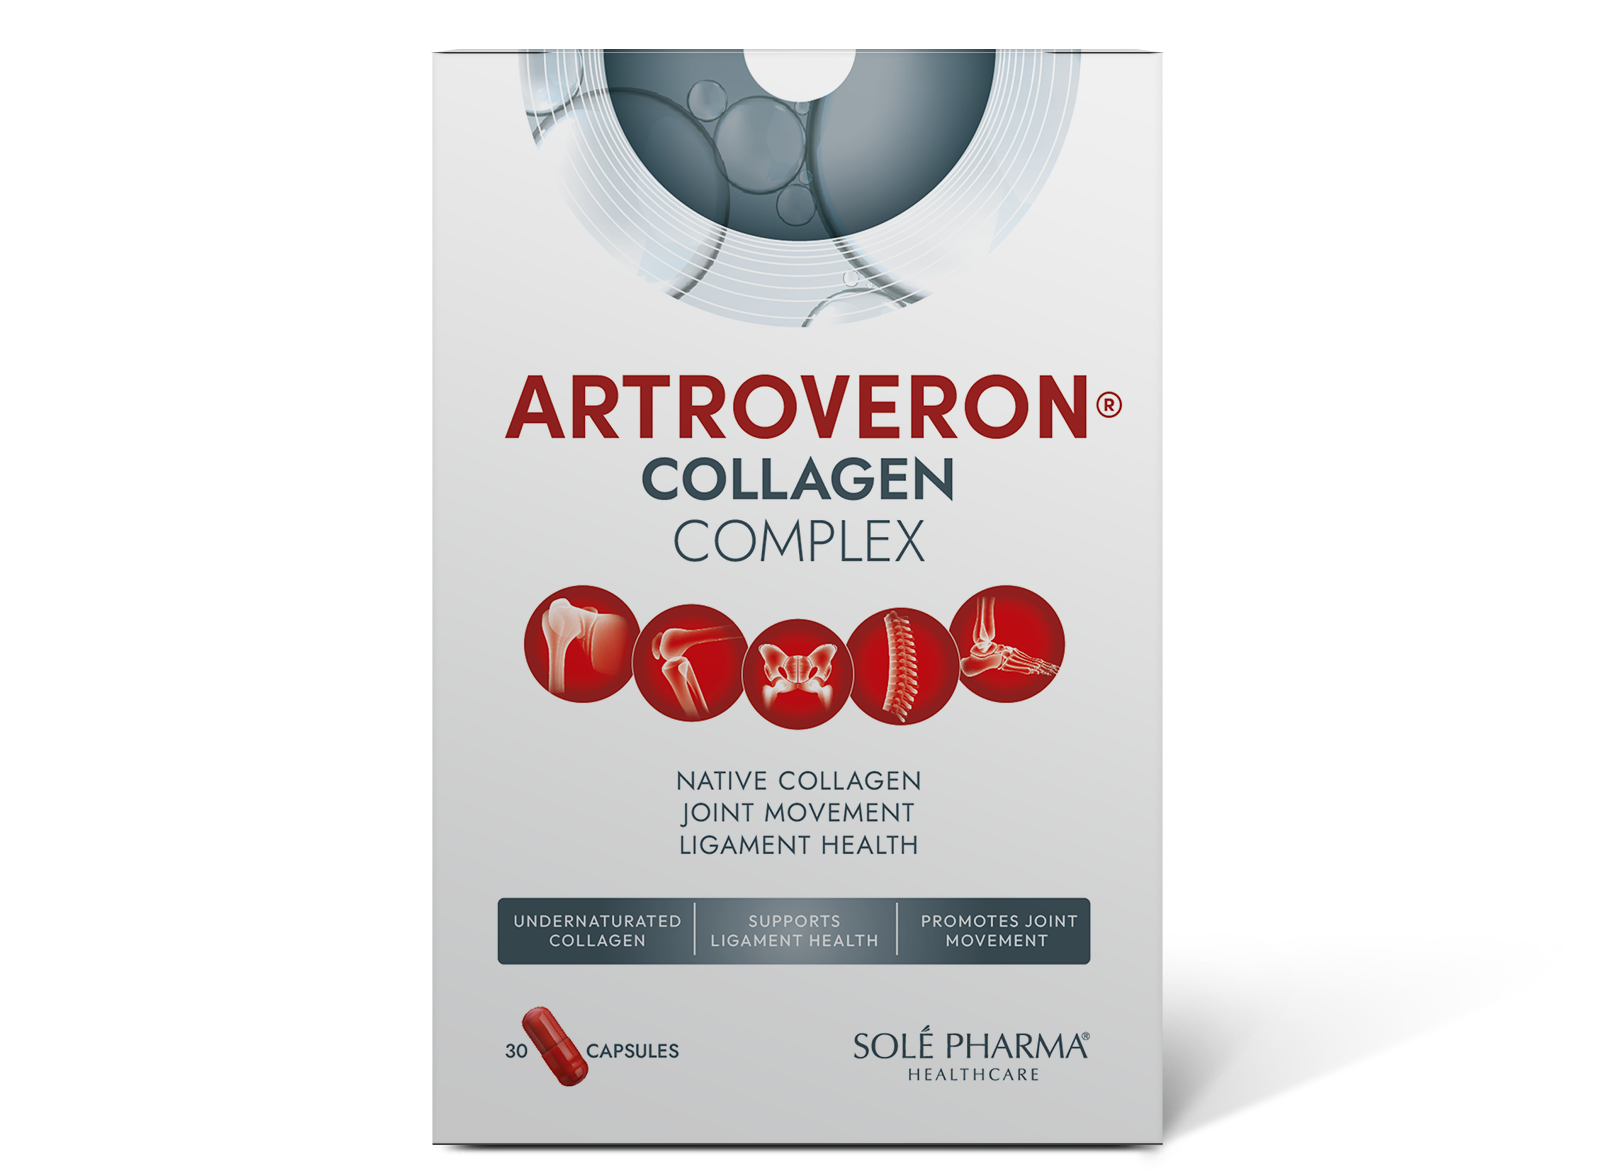 Artroveron® Collagen Complex